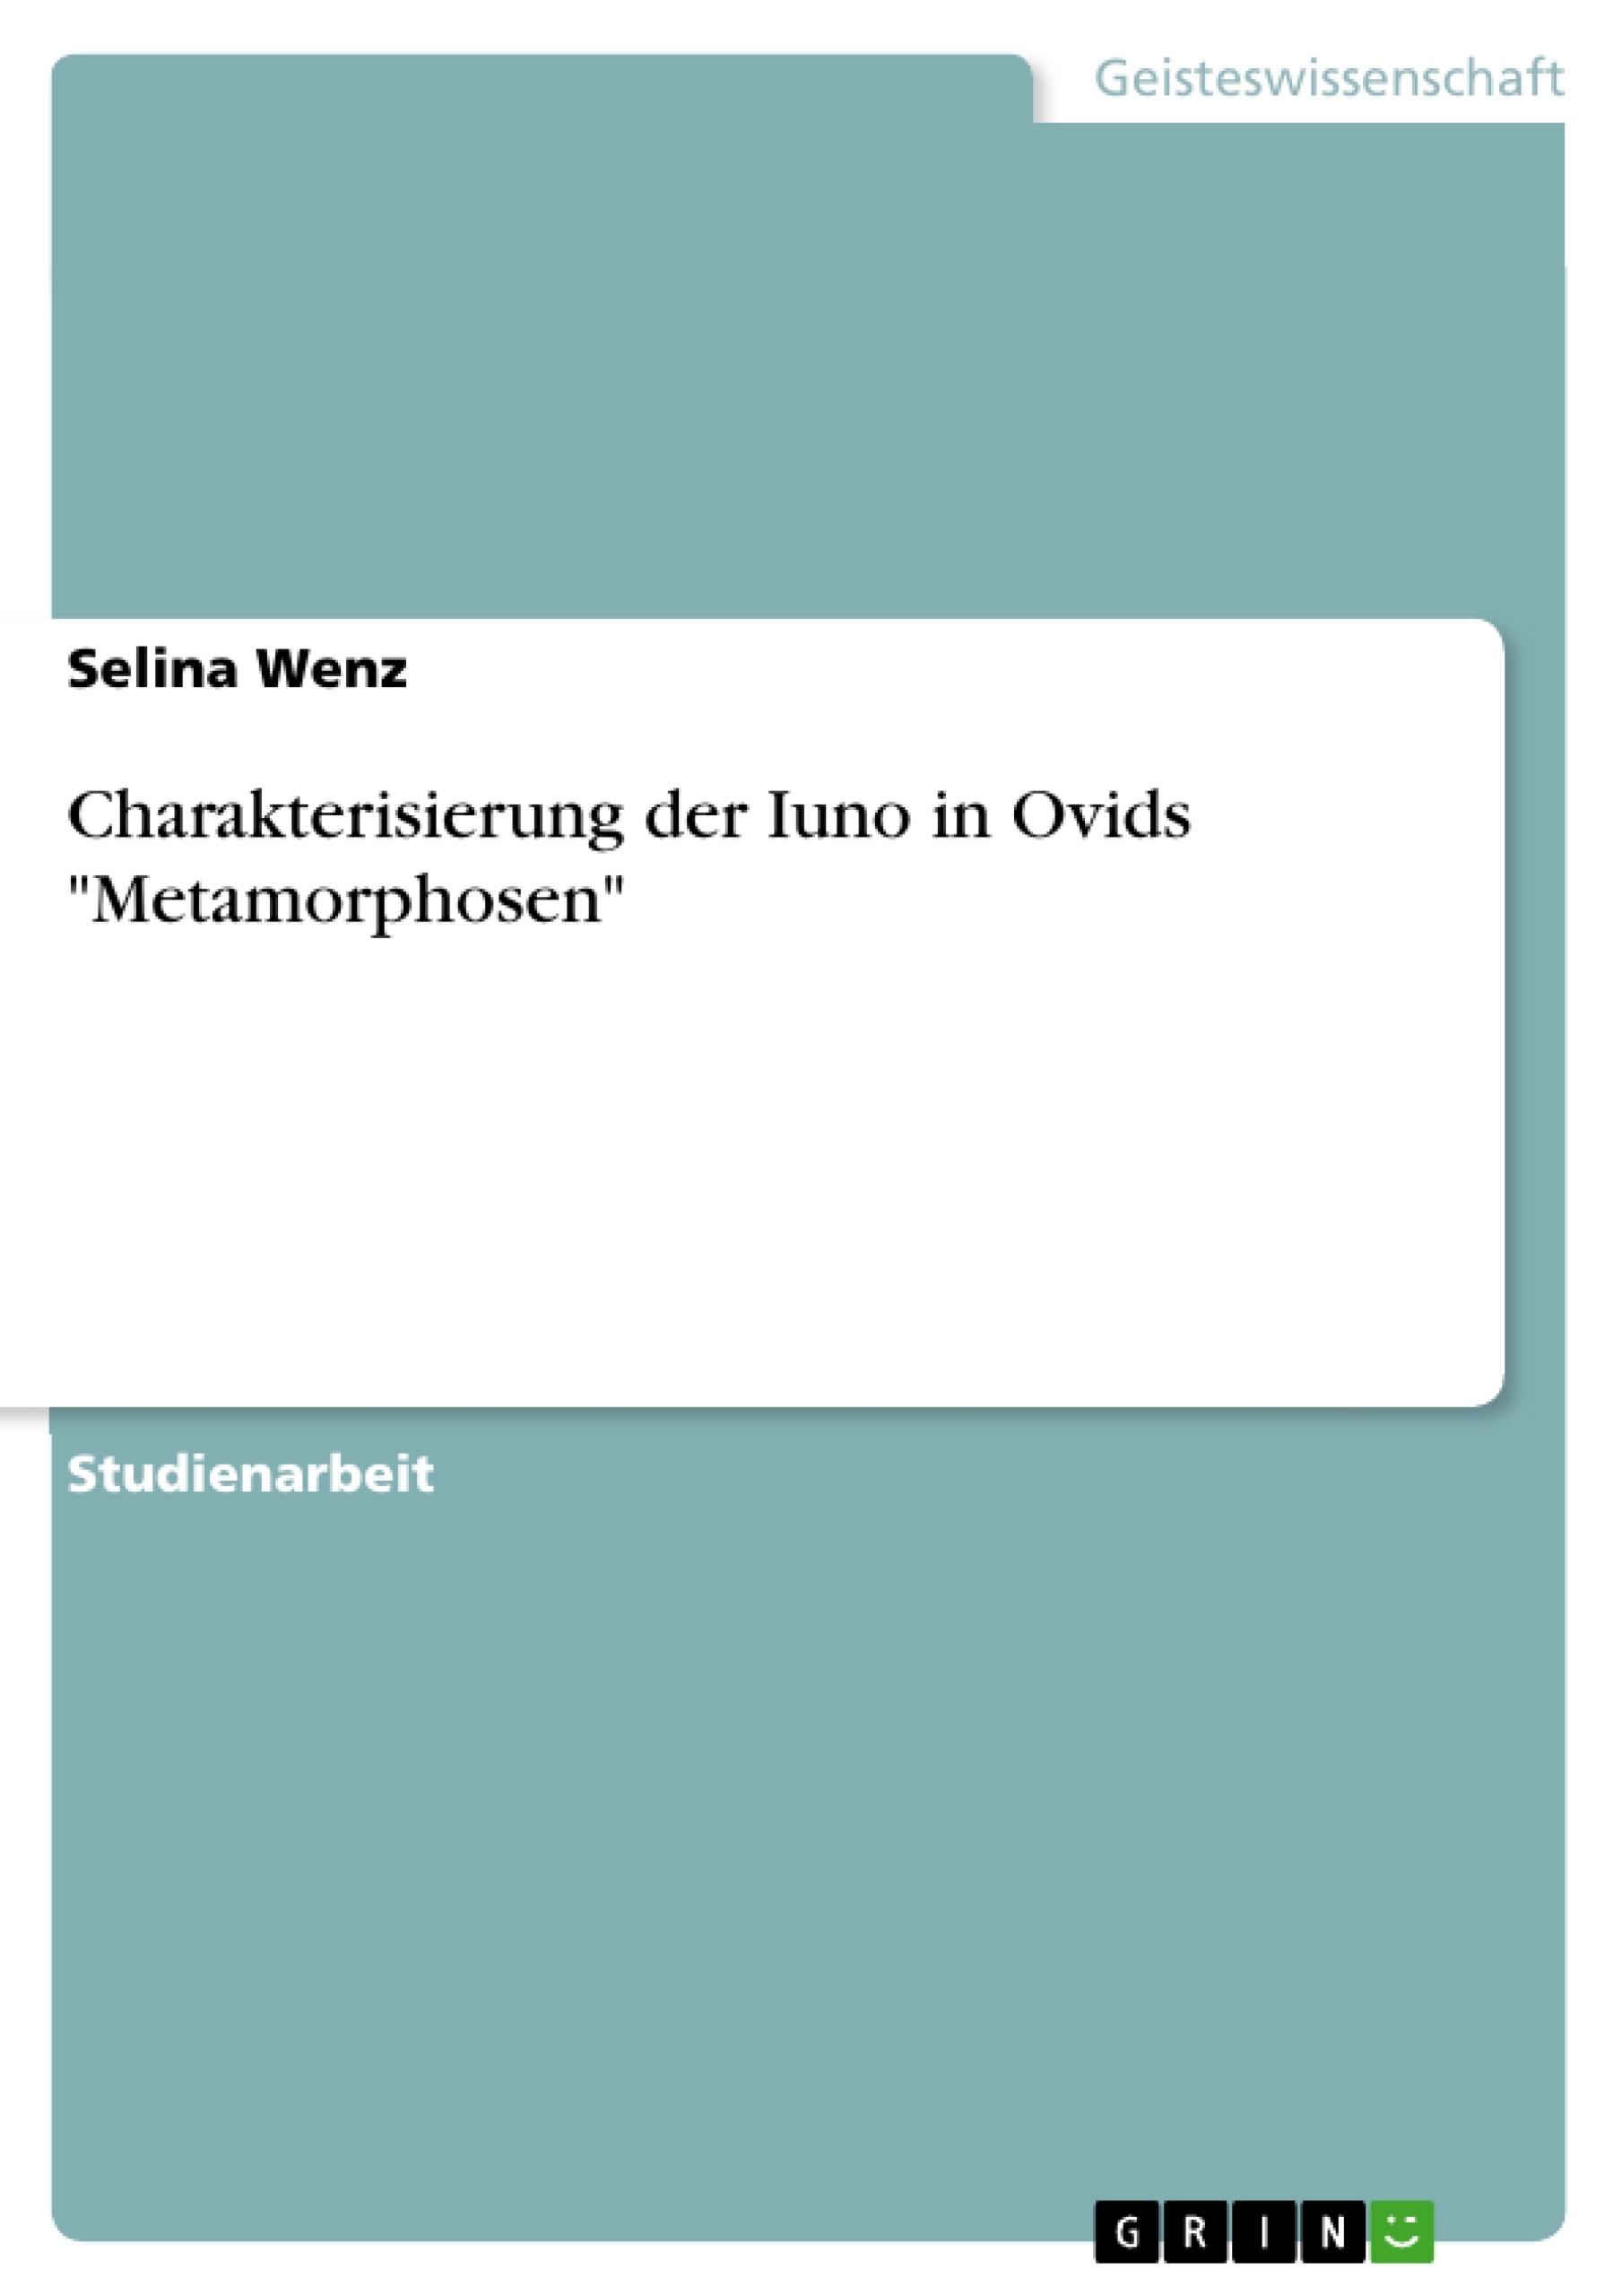 Título: Charakterisierung der Iuno in Ovids "Metamorphosen"